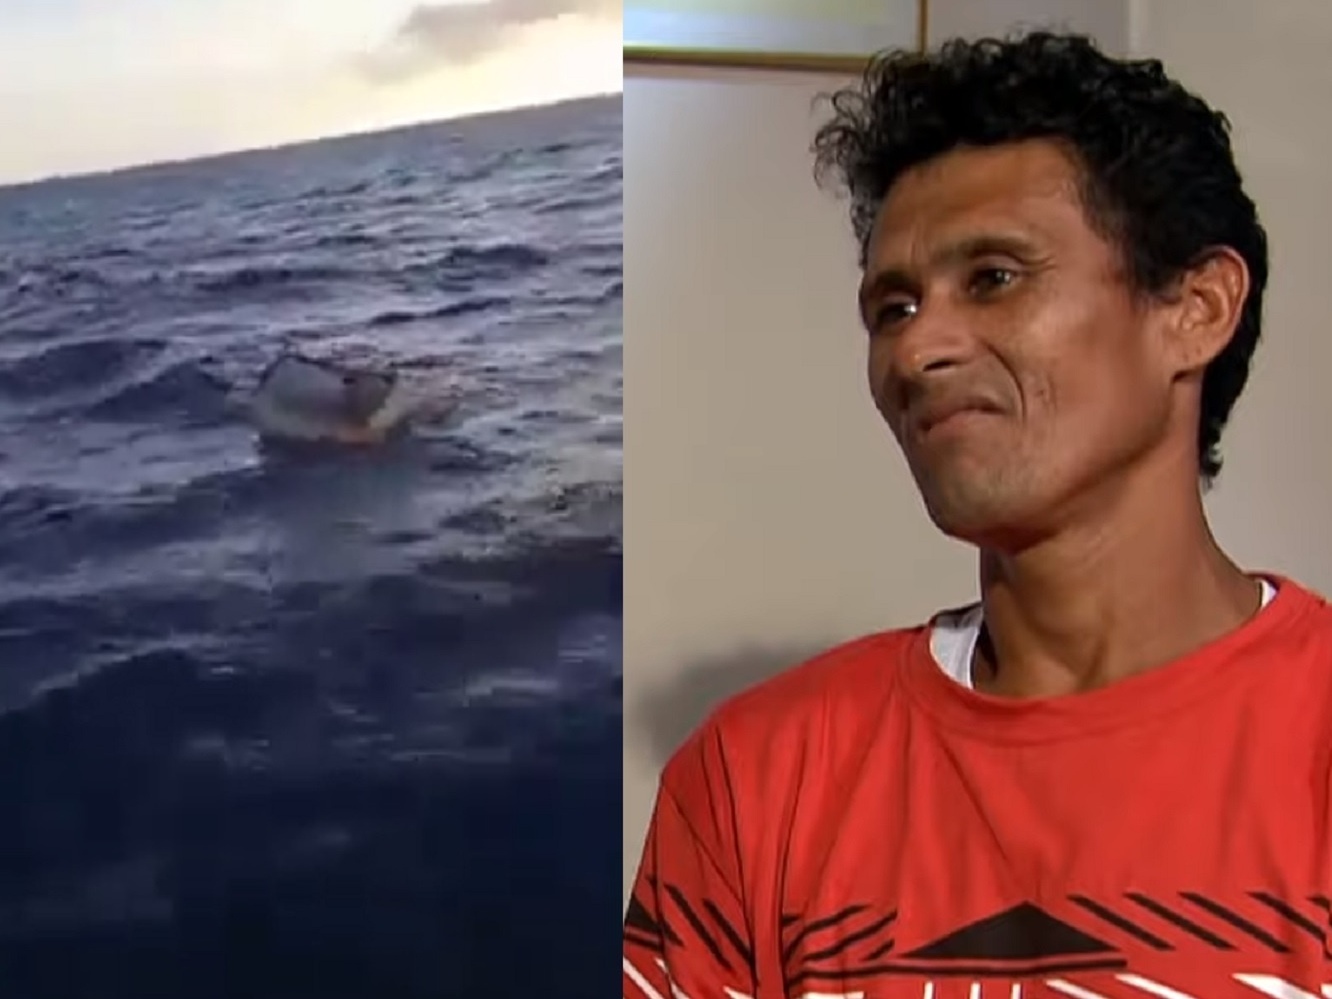 Brasileiro sobrevive 11 dias no oceano flutuando sozinho em um freezer